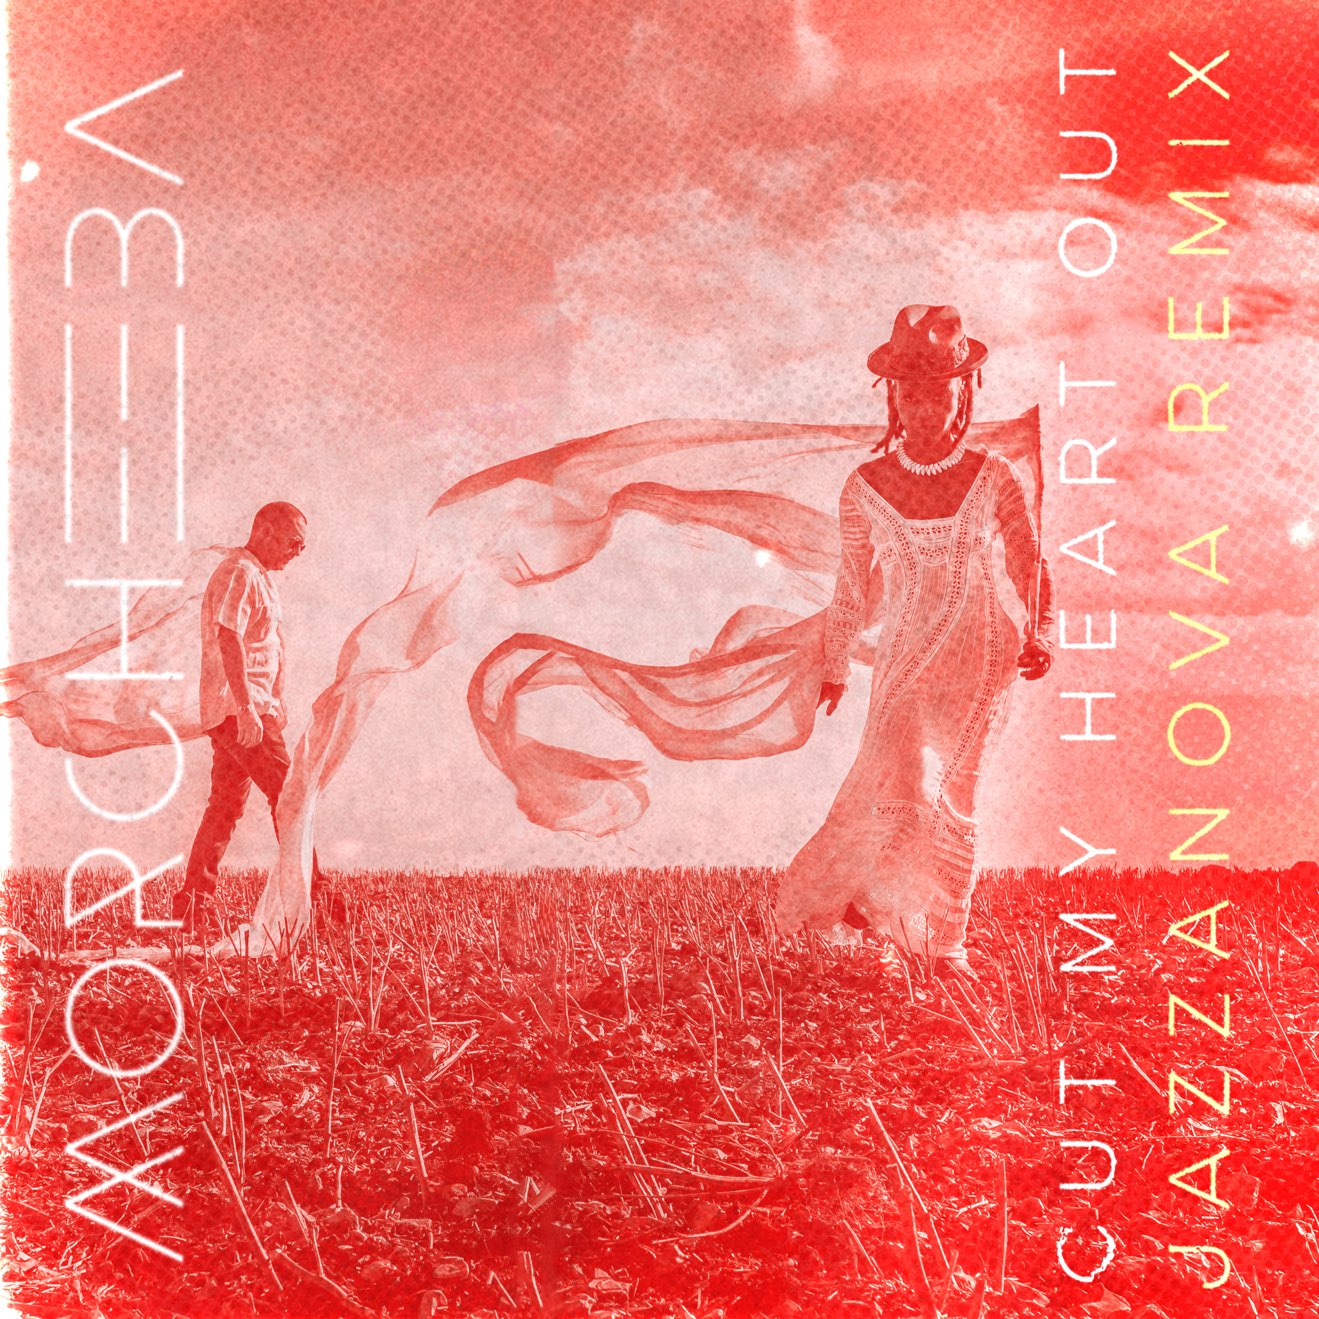 Morcheeba & Jazzanova – Cut My Heart Out (Jazzanova Remix) – Single (2022) [iTunes Match M4A]